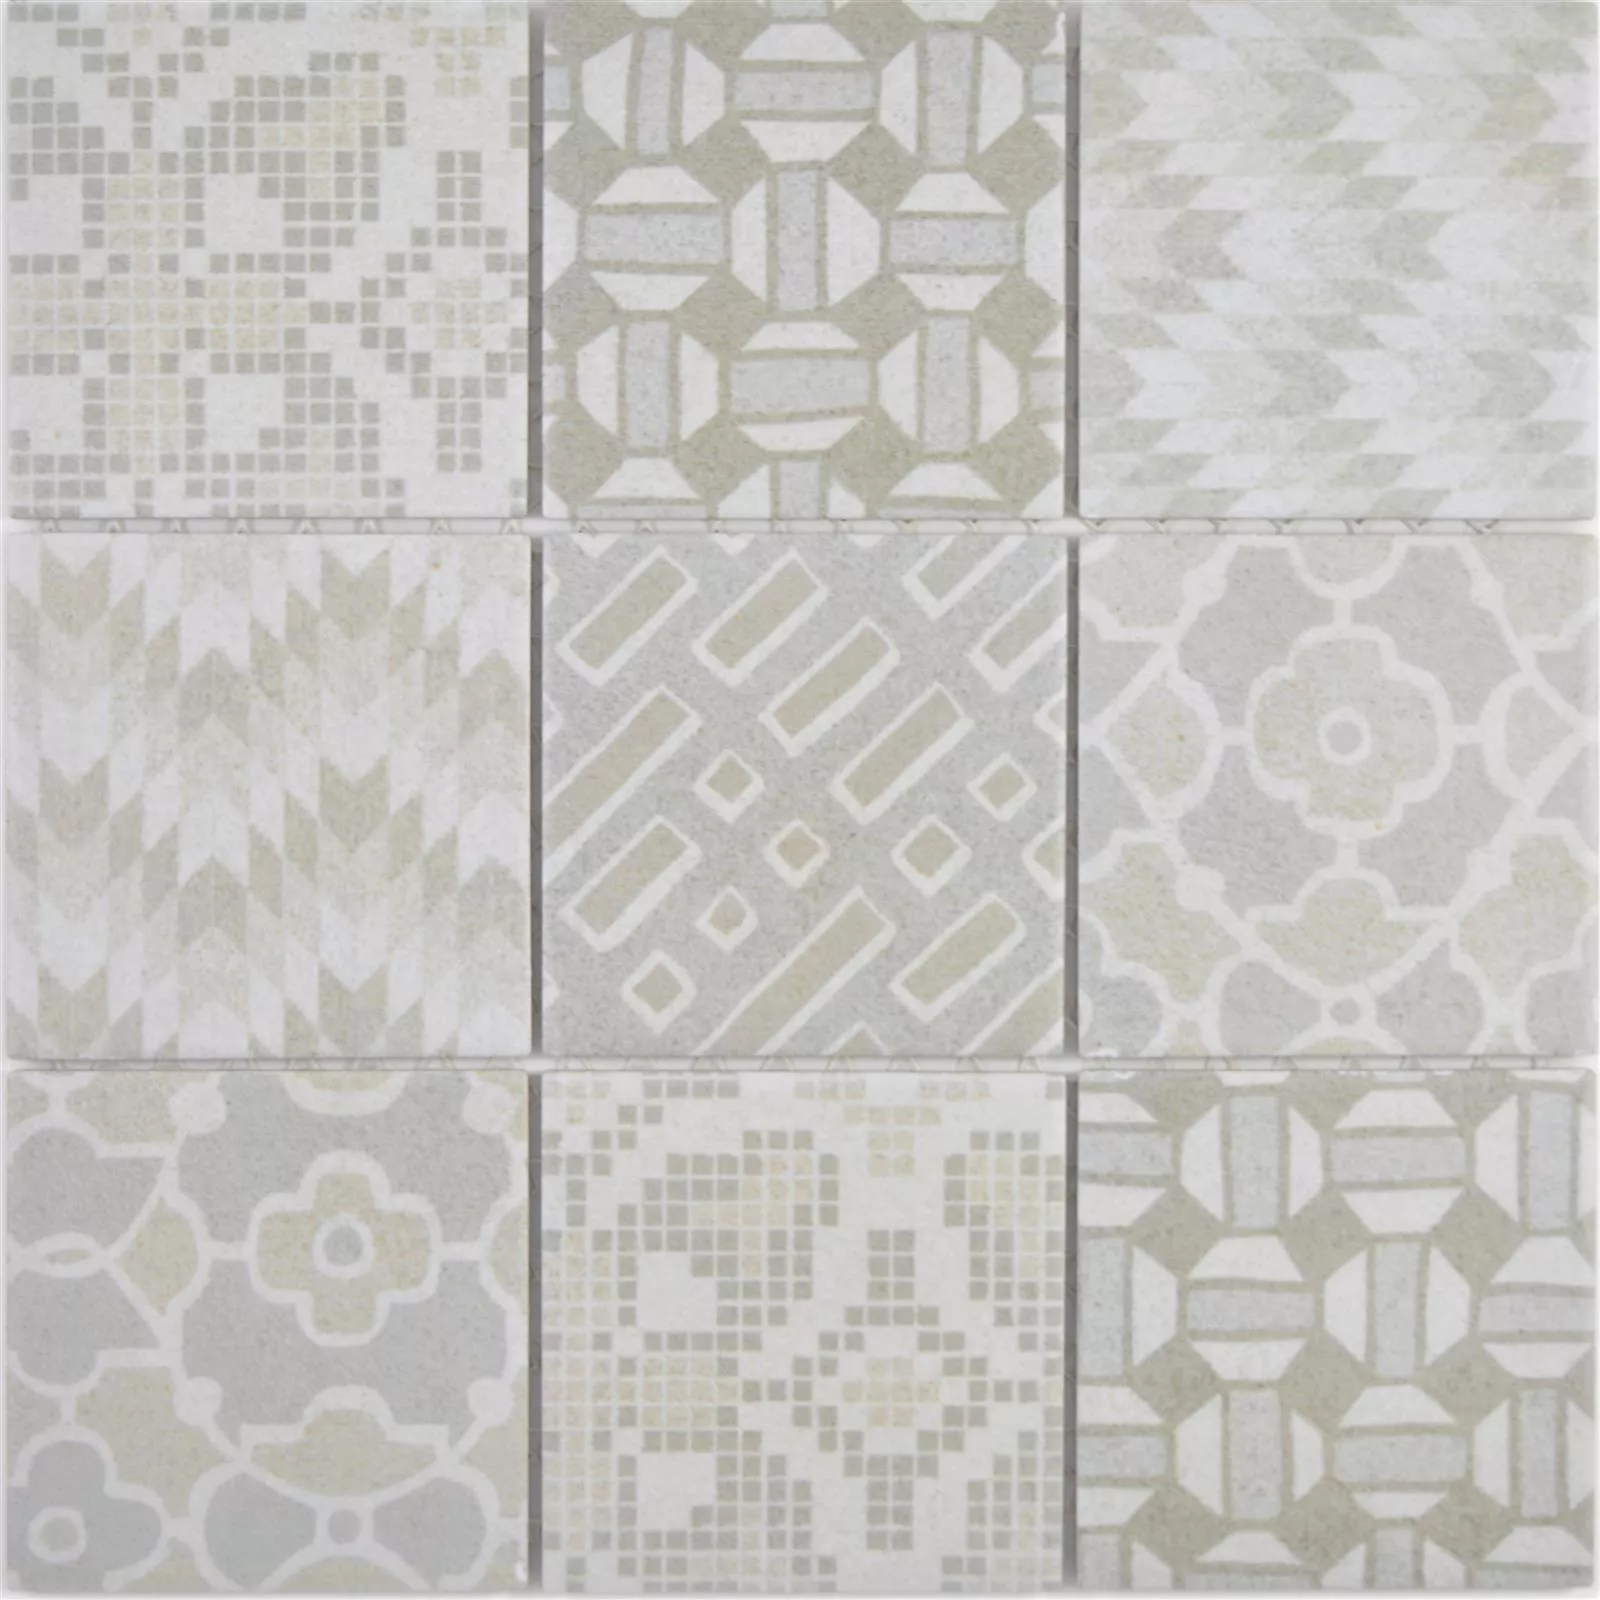 Sample Ceramic Mosaic Tiles Romantica Retro Bianco